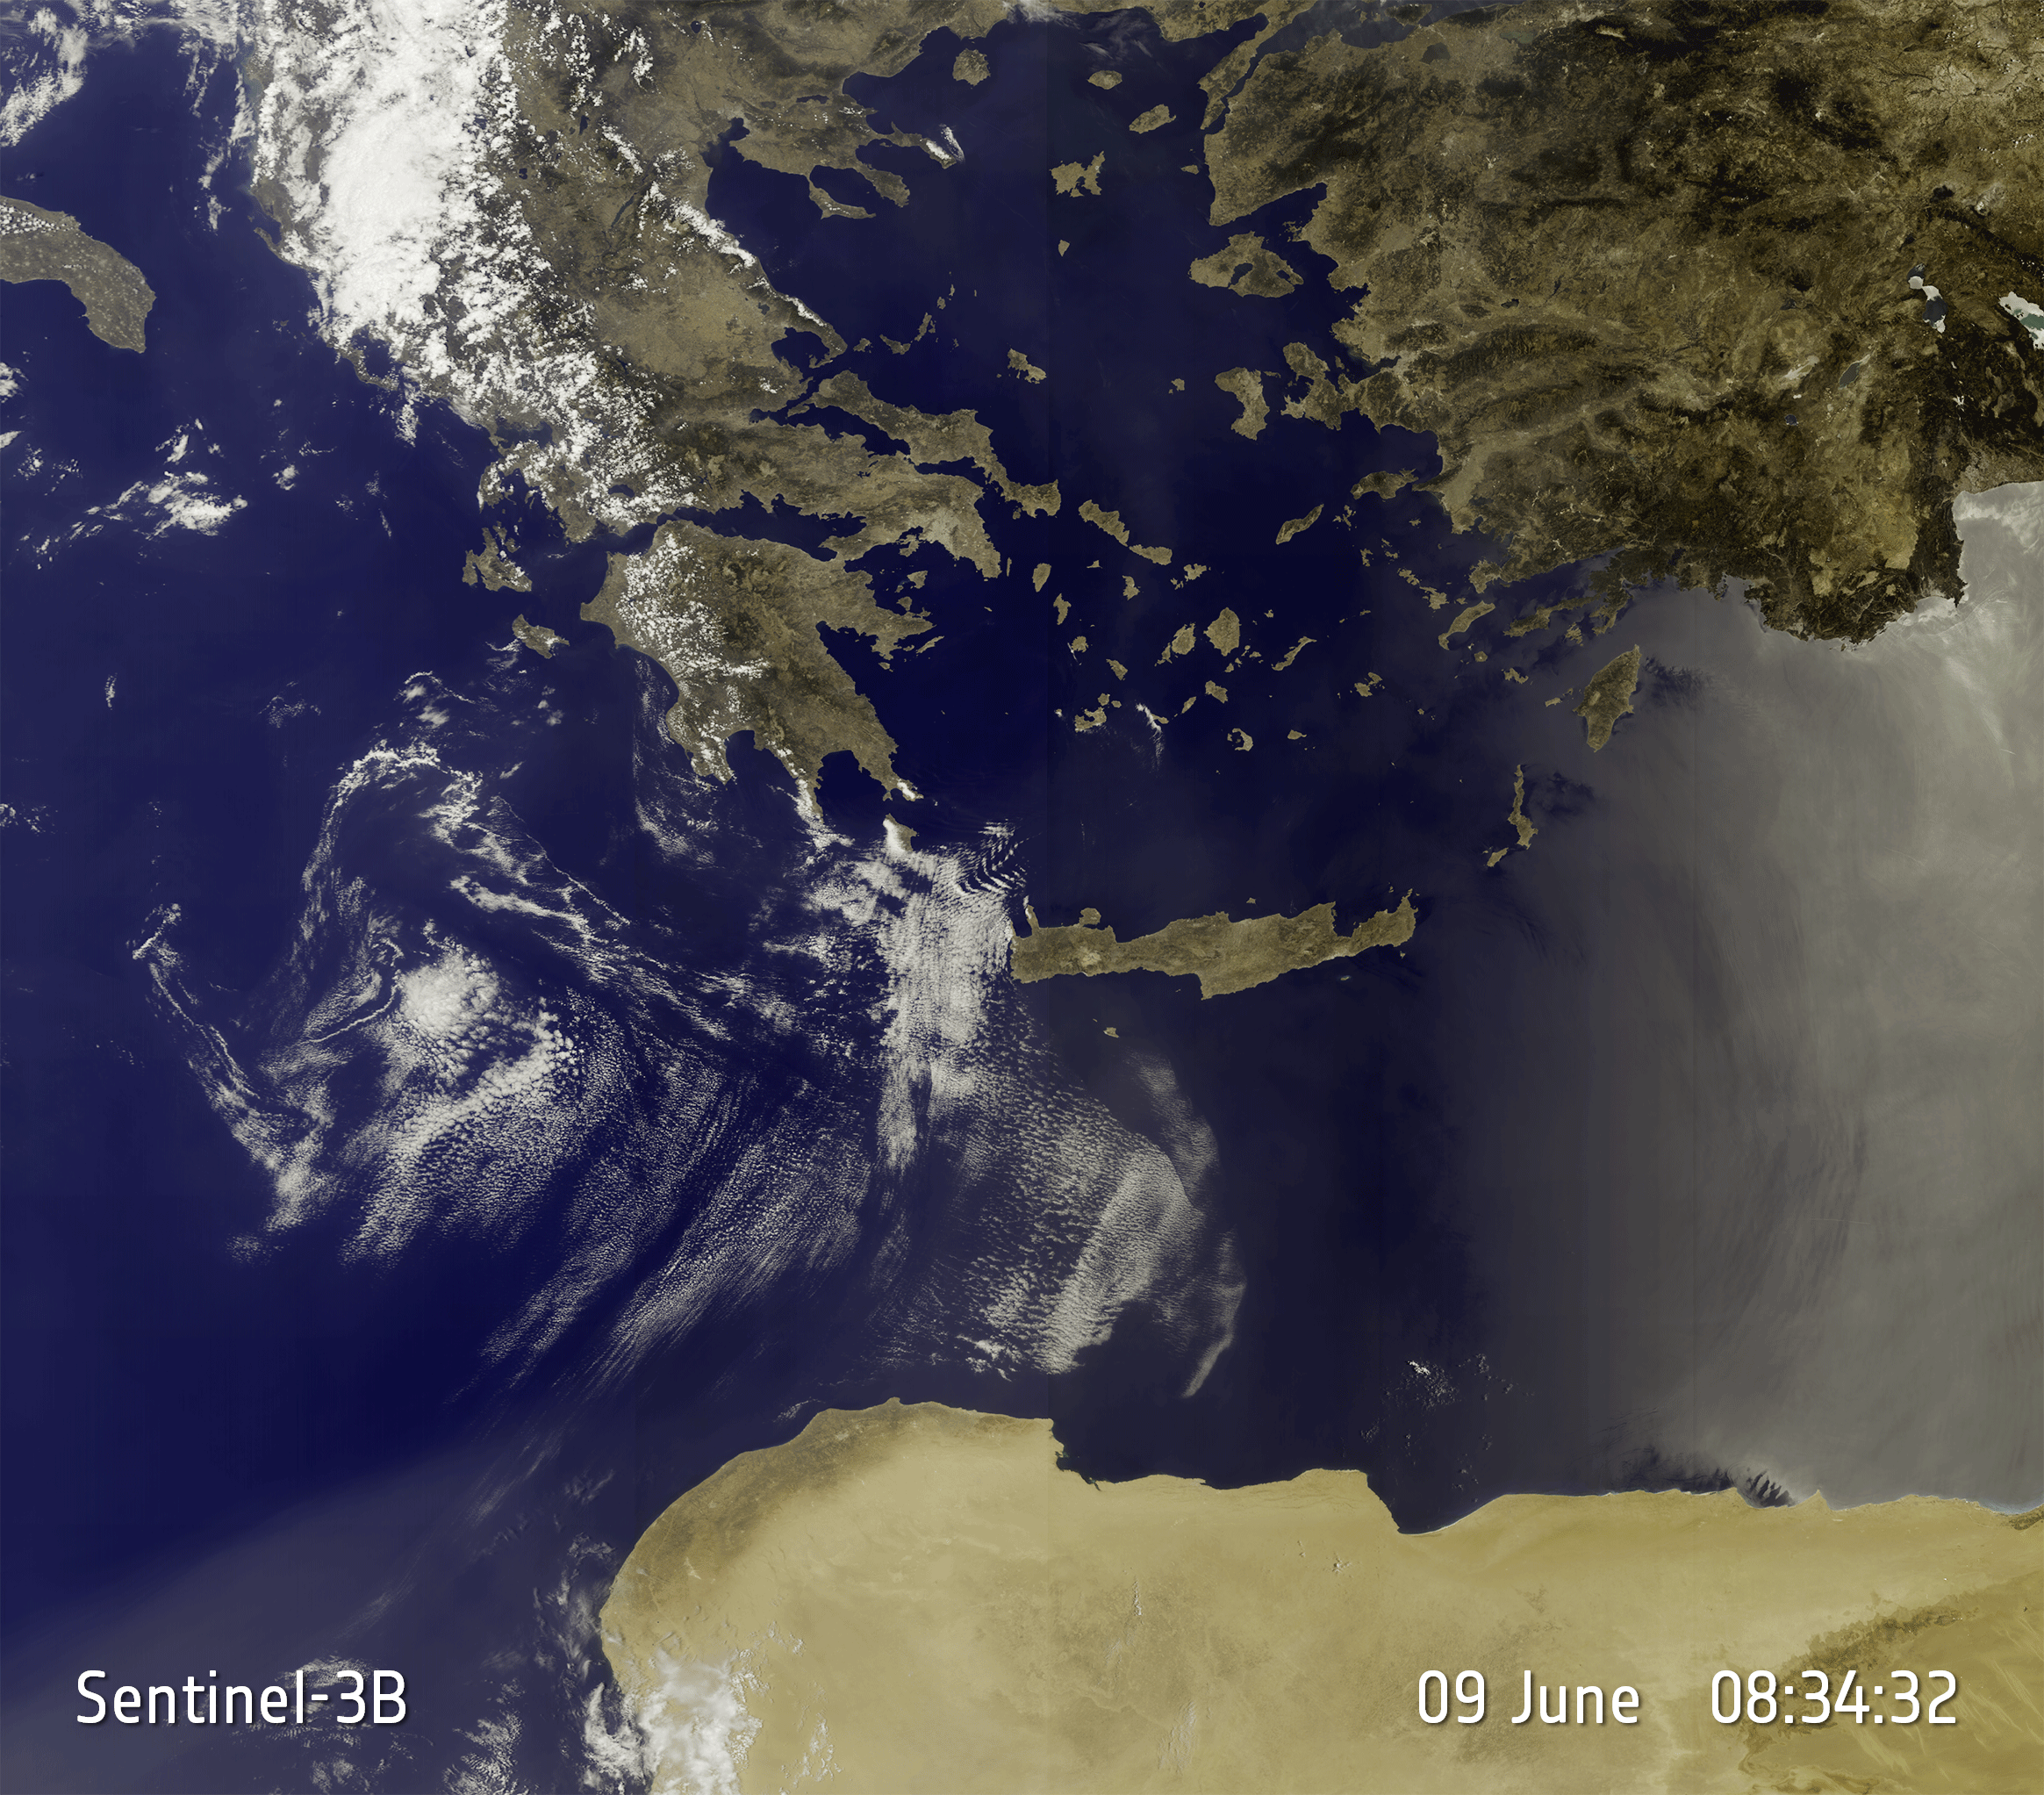 Porovnání snímků Řecka a okolí z družic Sentinel 3A a Sentinel 3B.